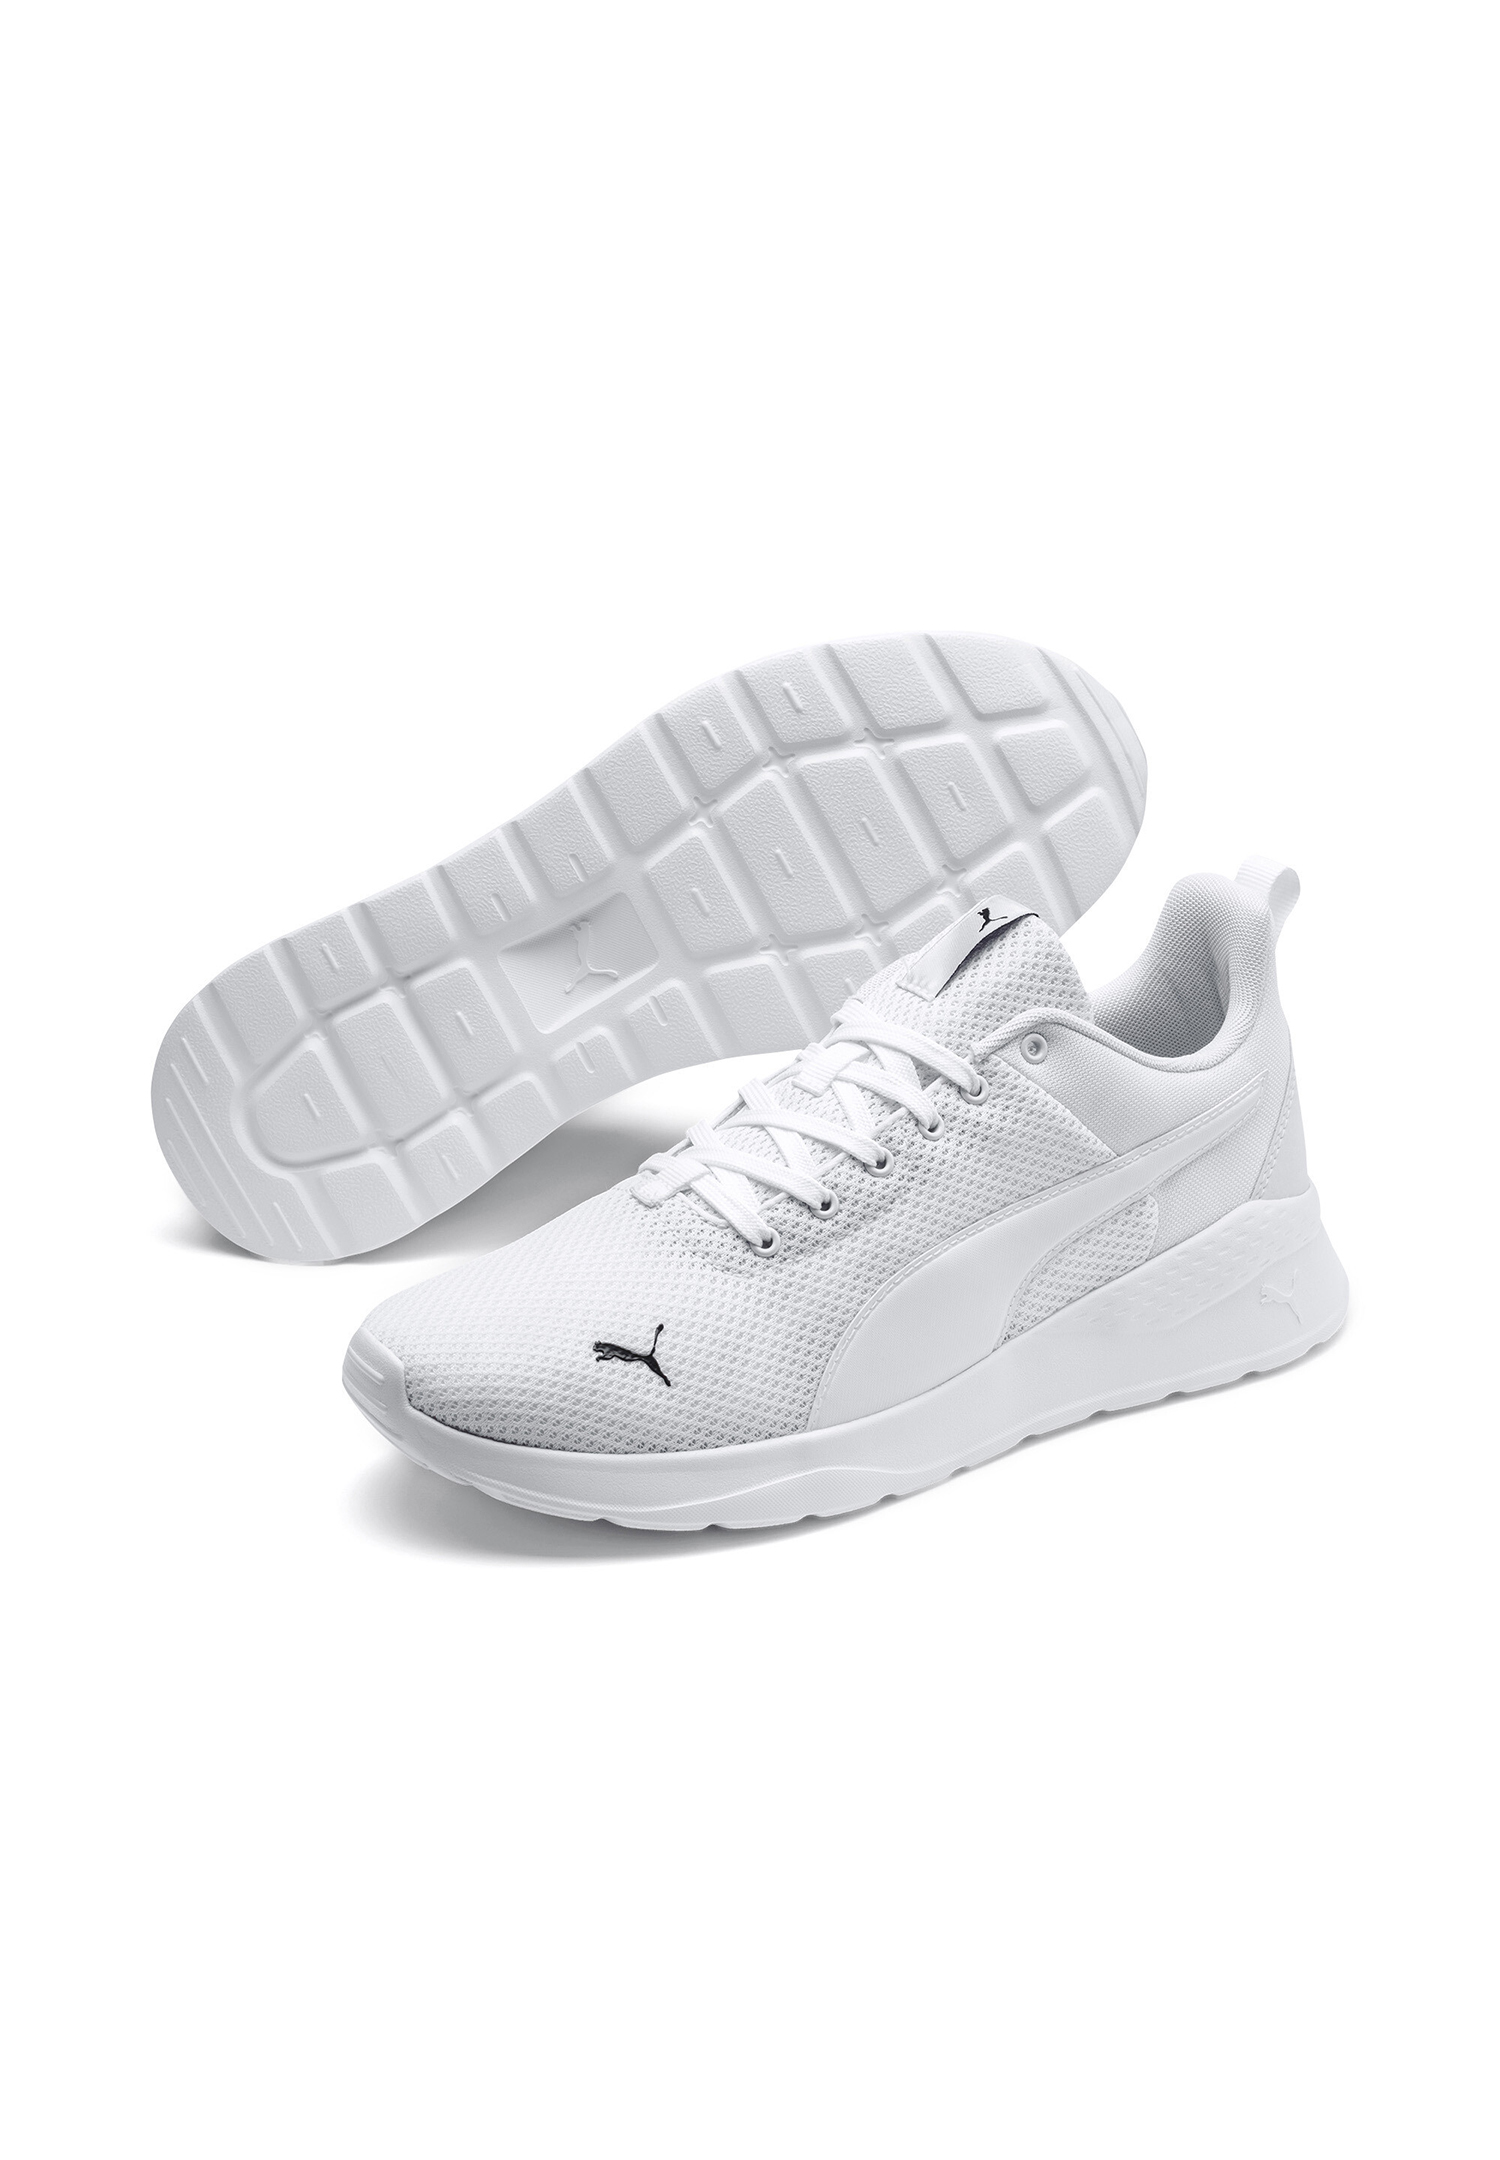 Puma Anzarun Lite Unisex Sneaker Sportschuh 371128 03 Weiß